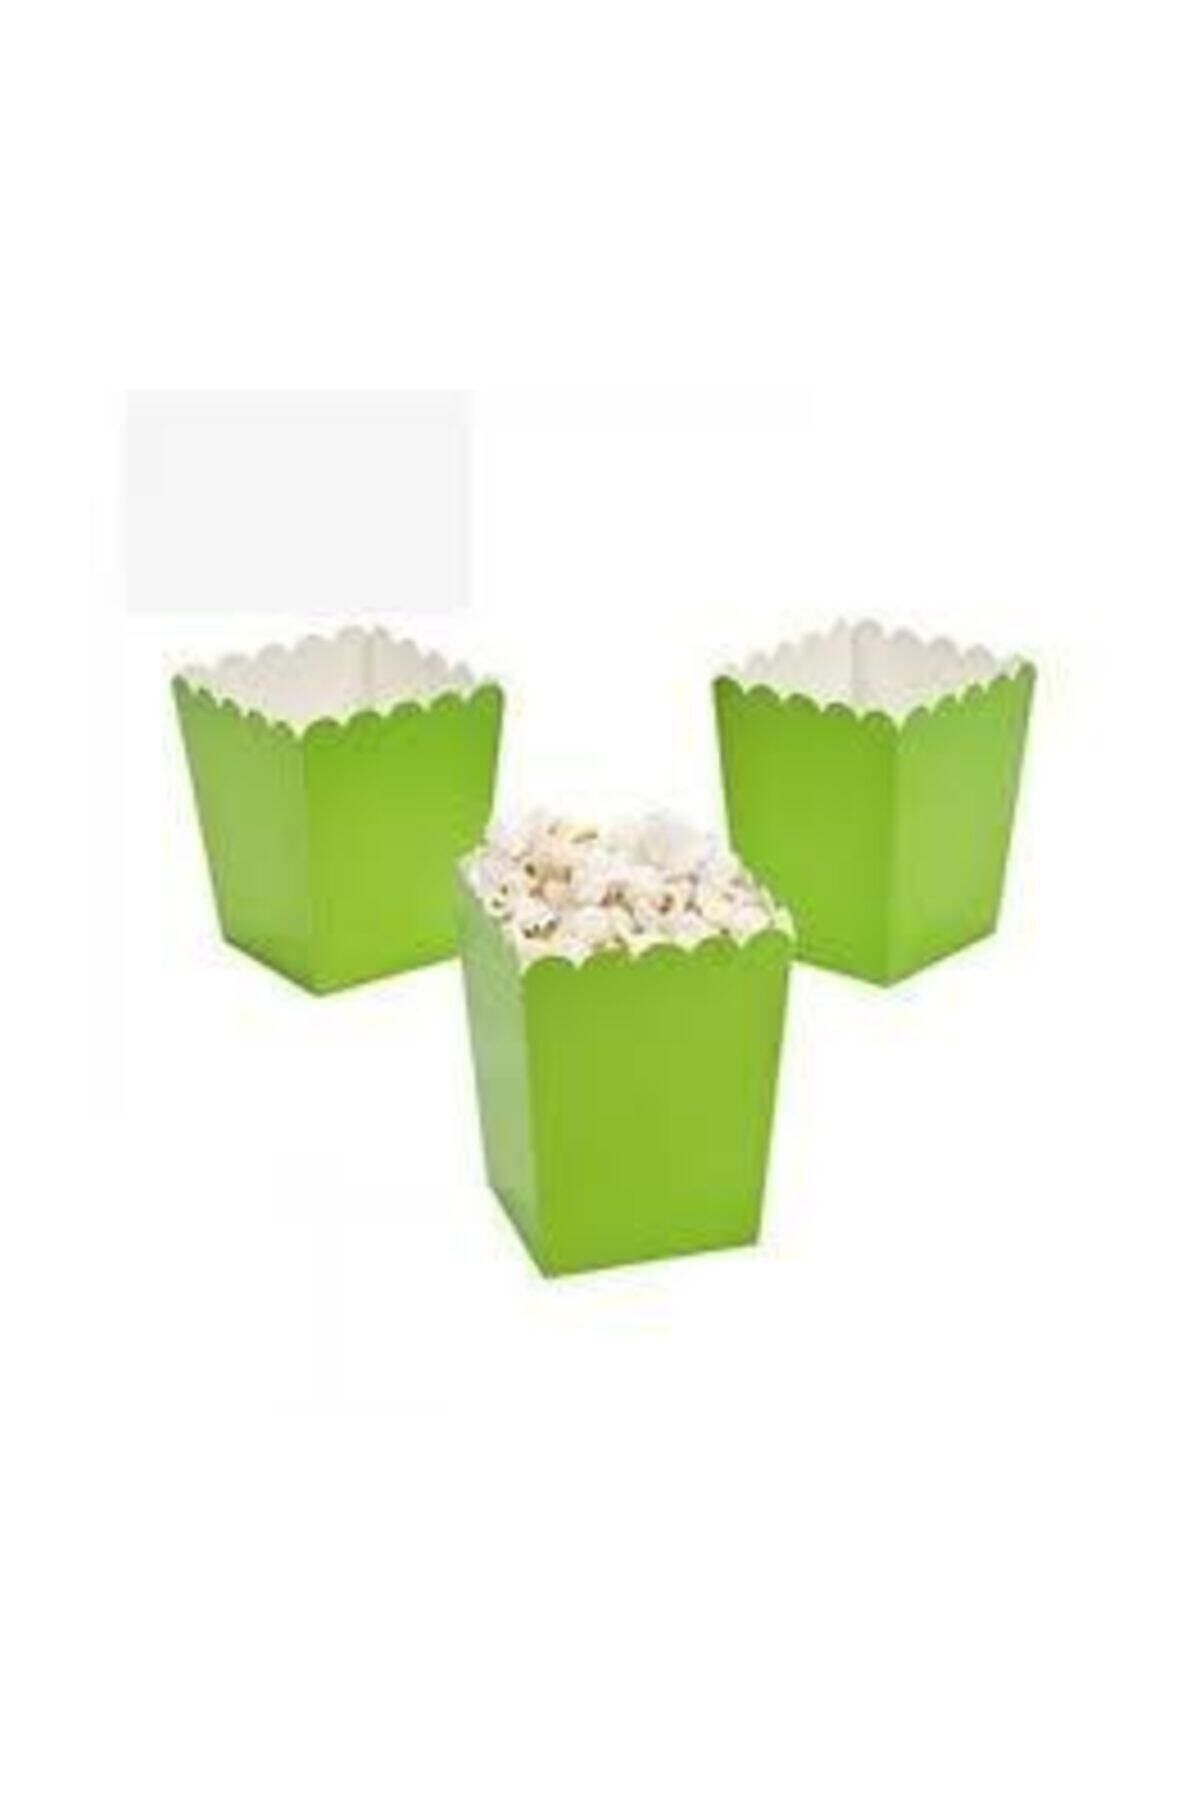 DENİZ Popcorn Kutusu ( Mısır , Cips Kutusu ) 10 Adet Yeşil